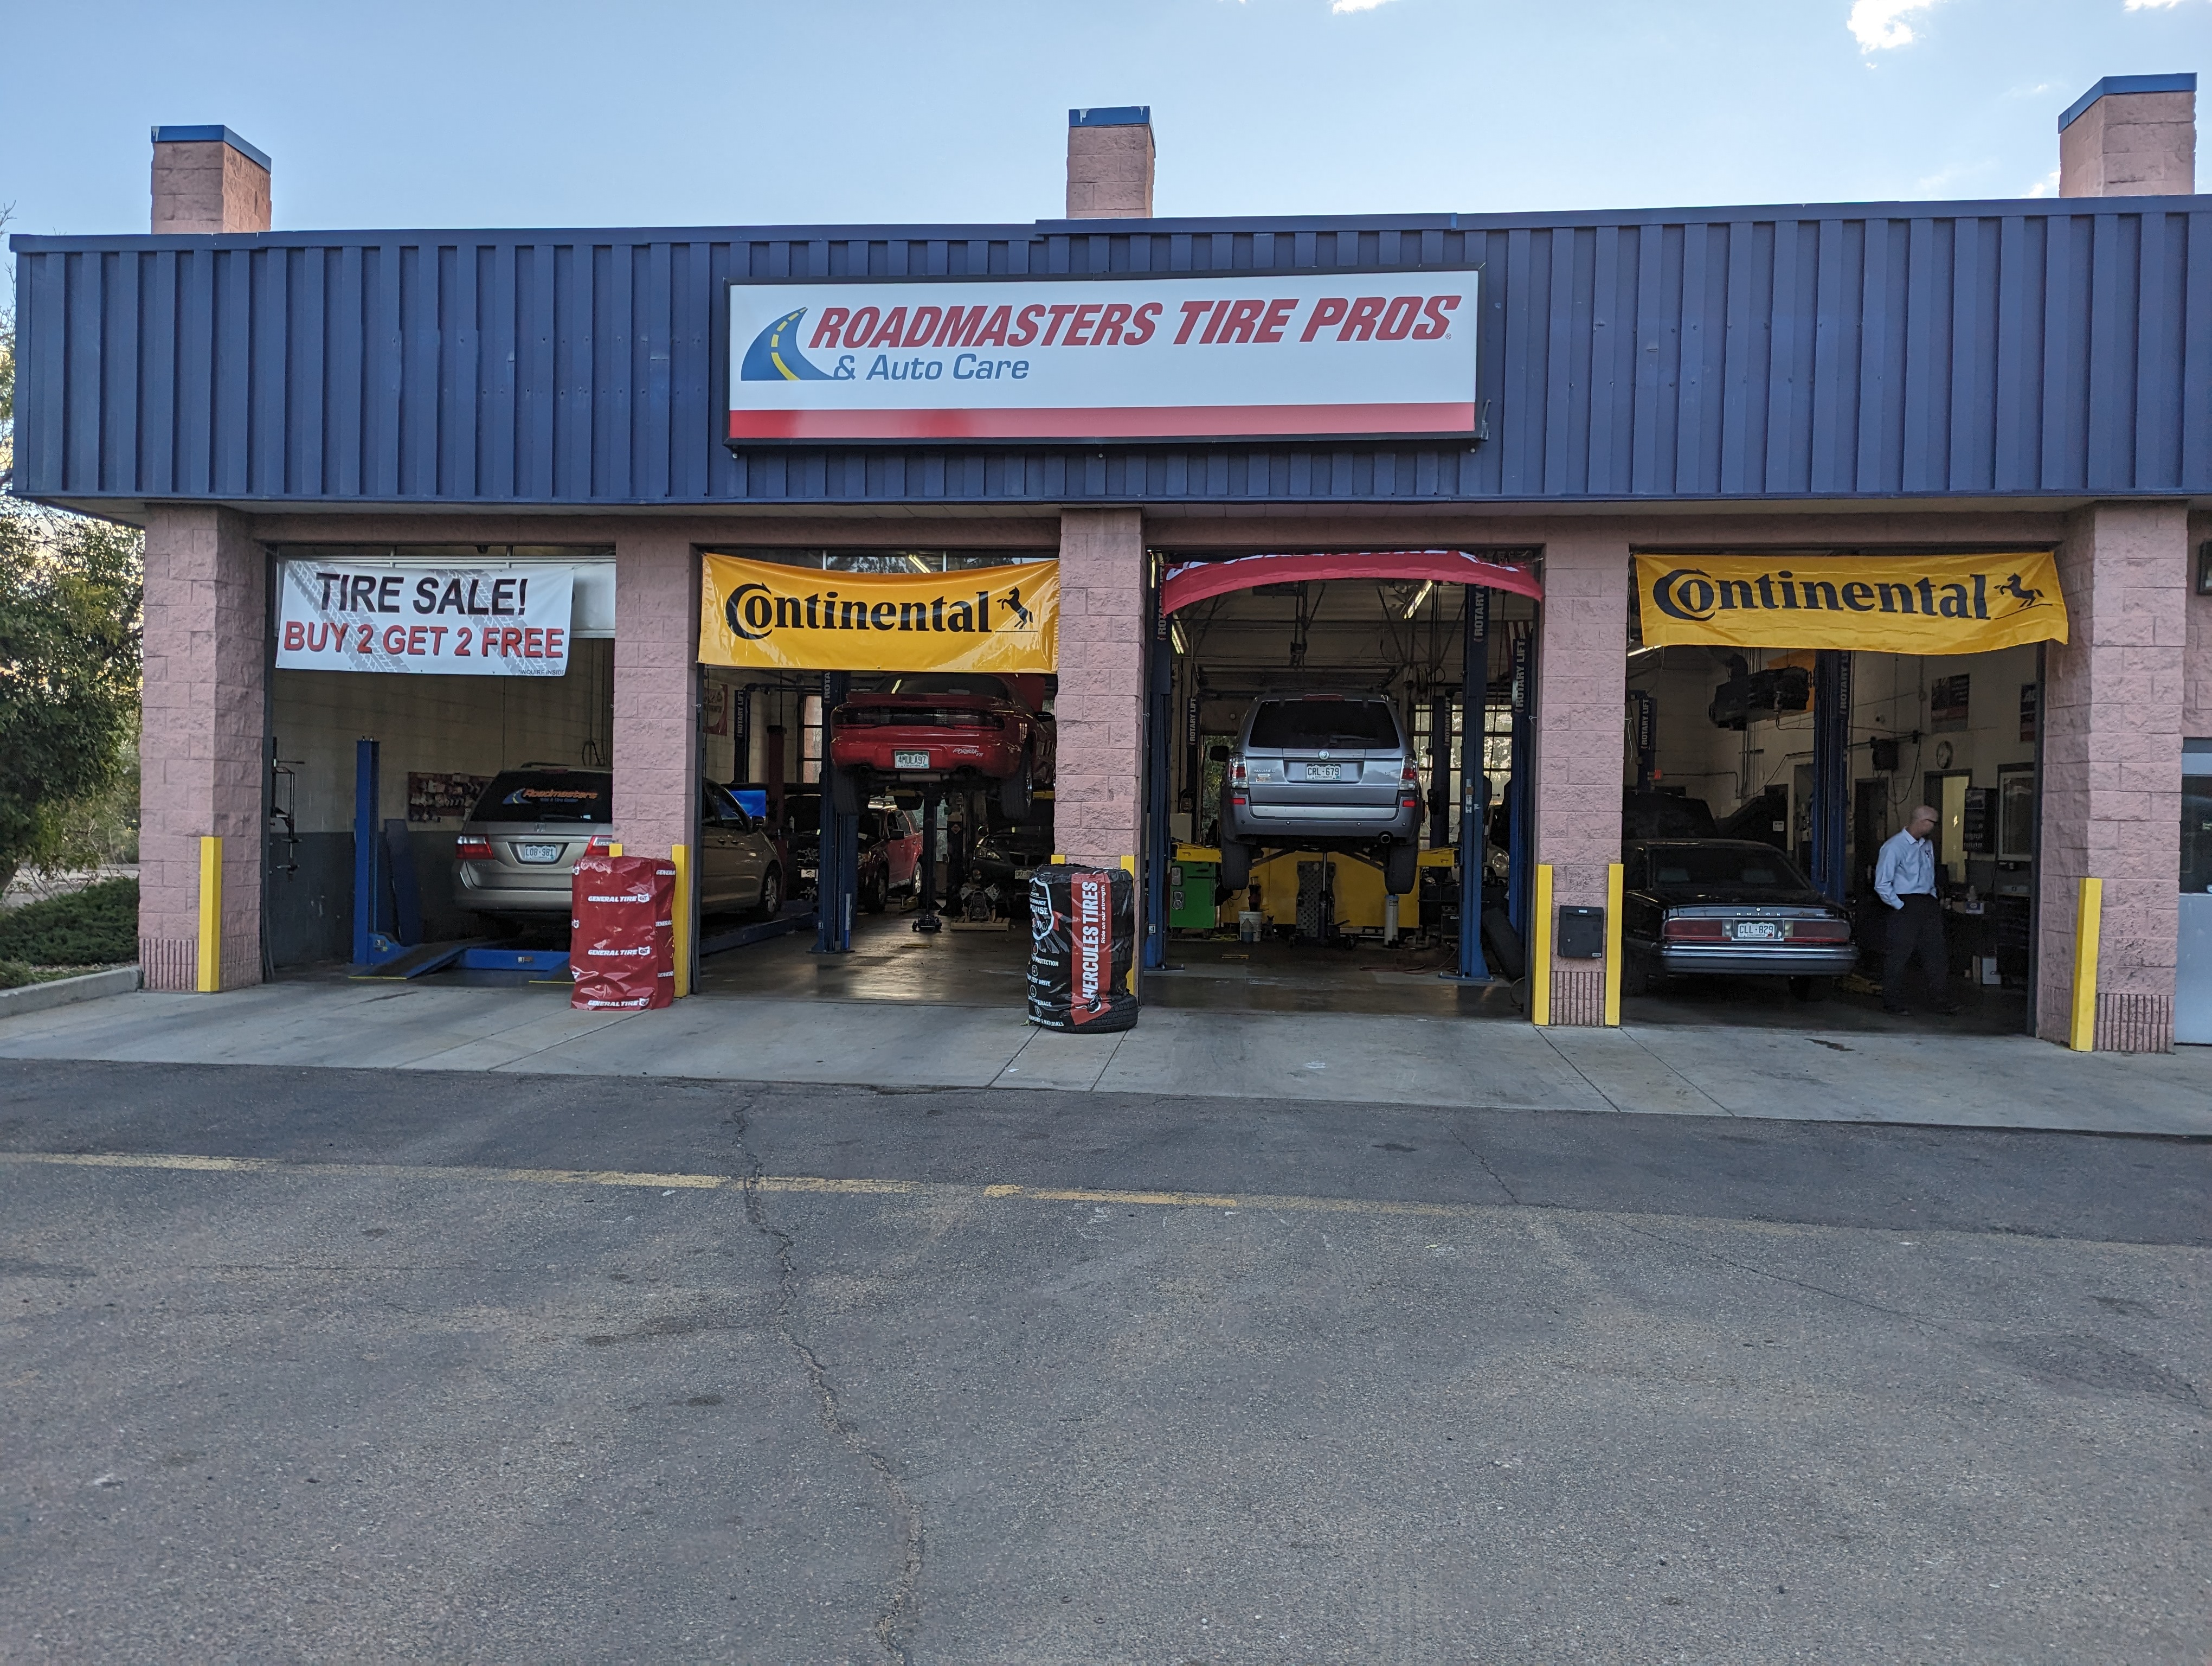 Roadmasters Tire Pros & Auto Care